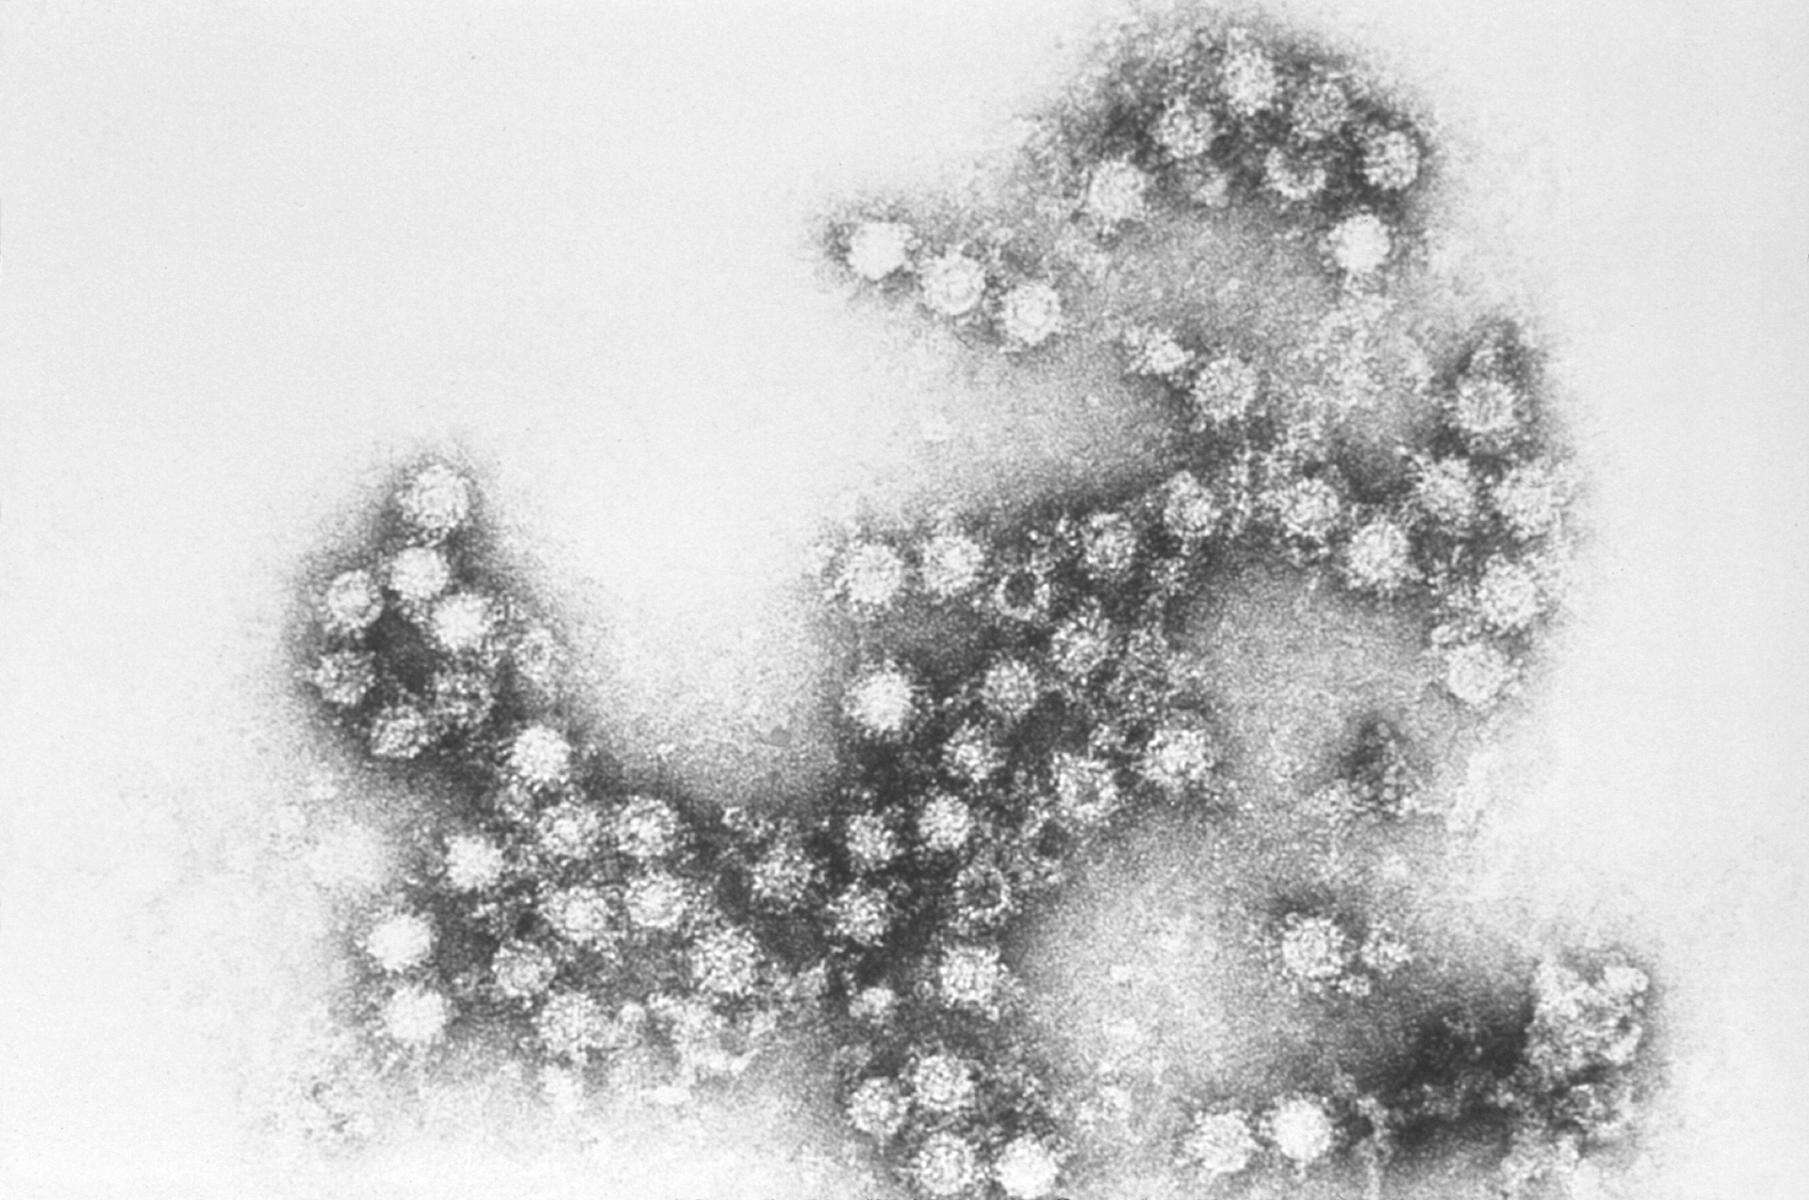 Image of Enterovirus